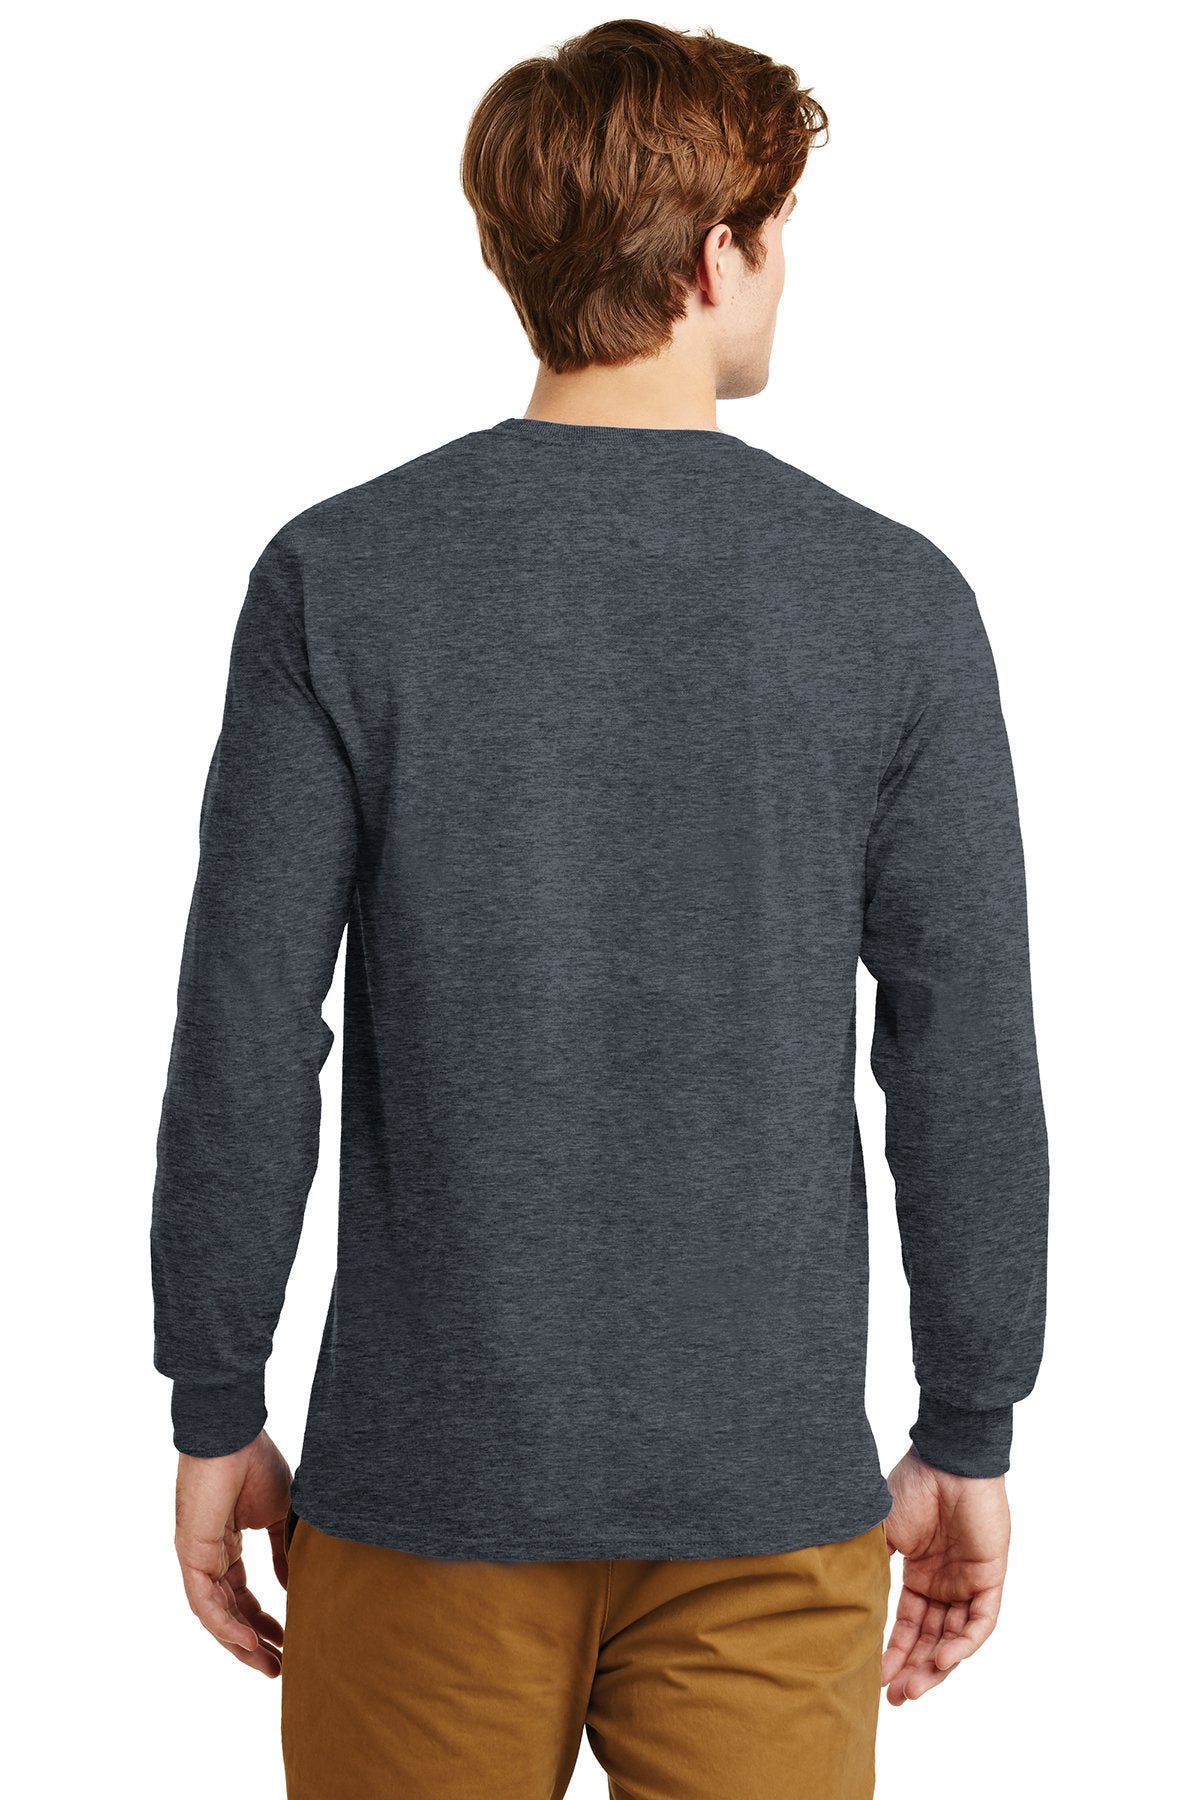 gildan ultra cotton long sleeve t shirt g2400 dark heather